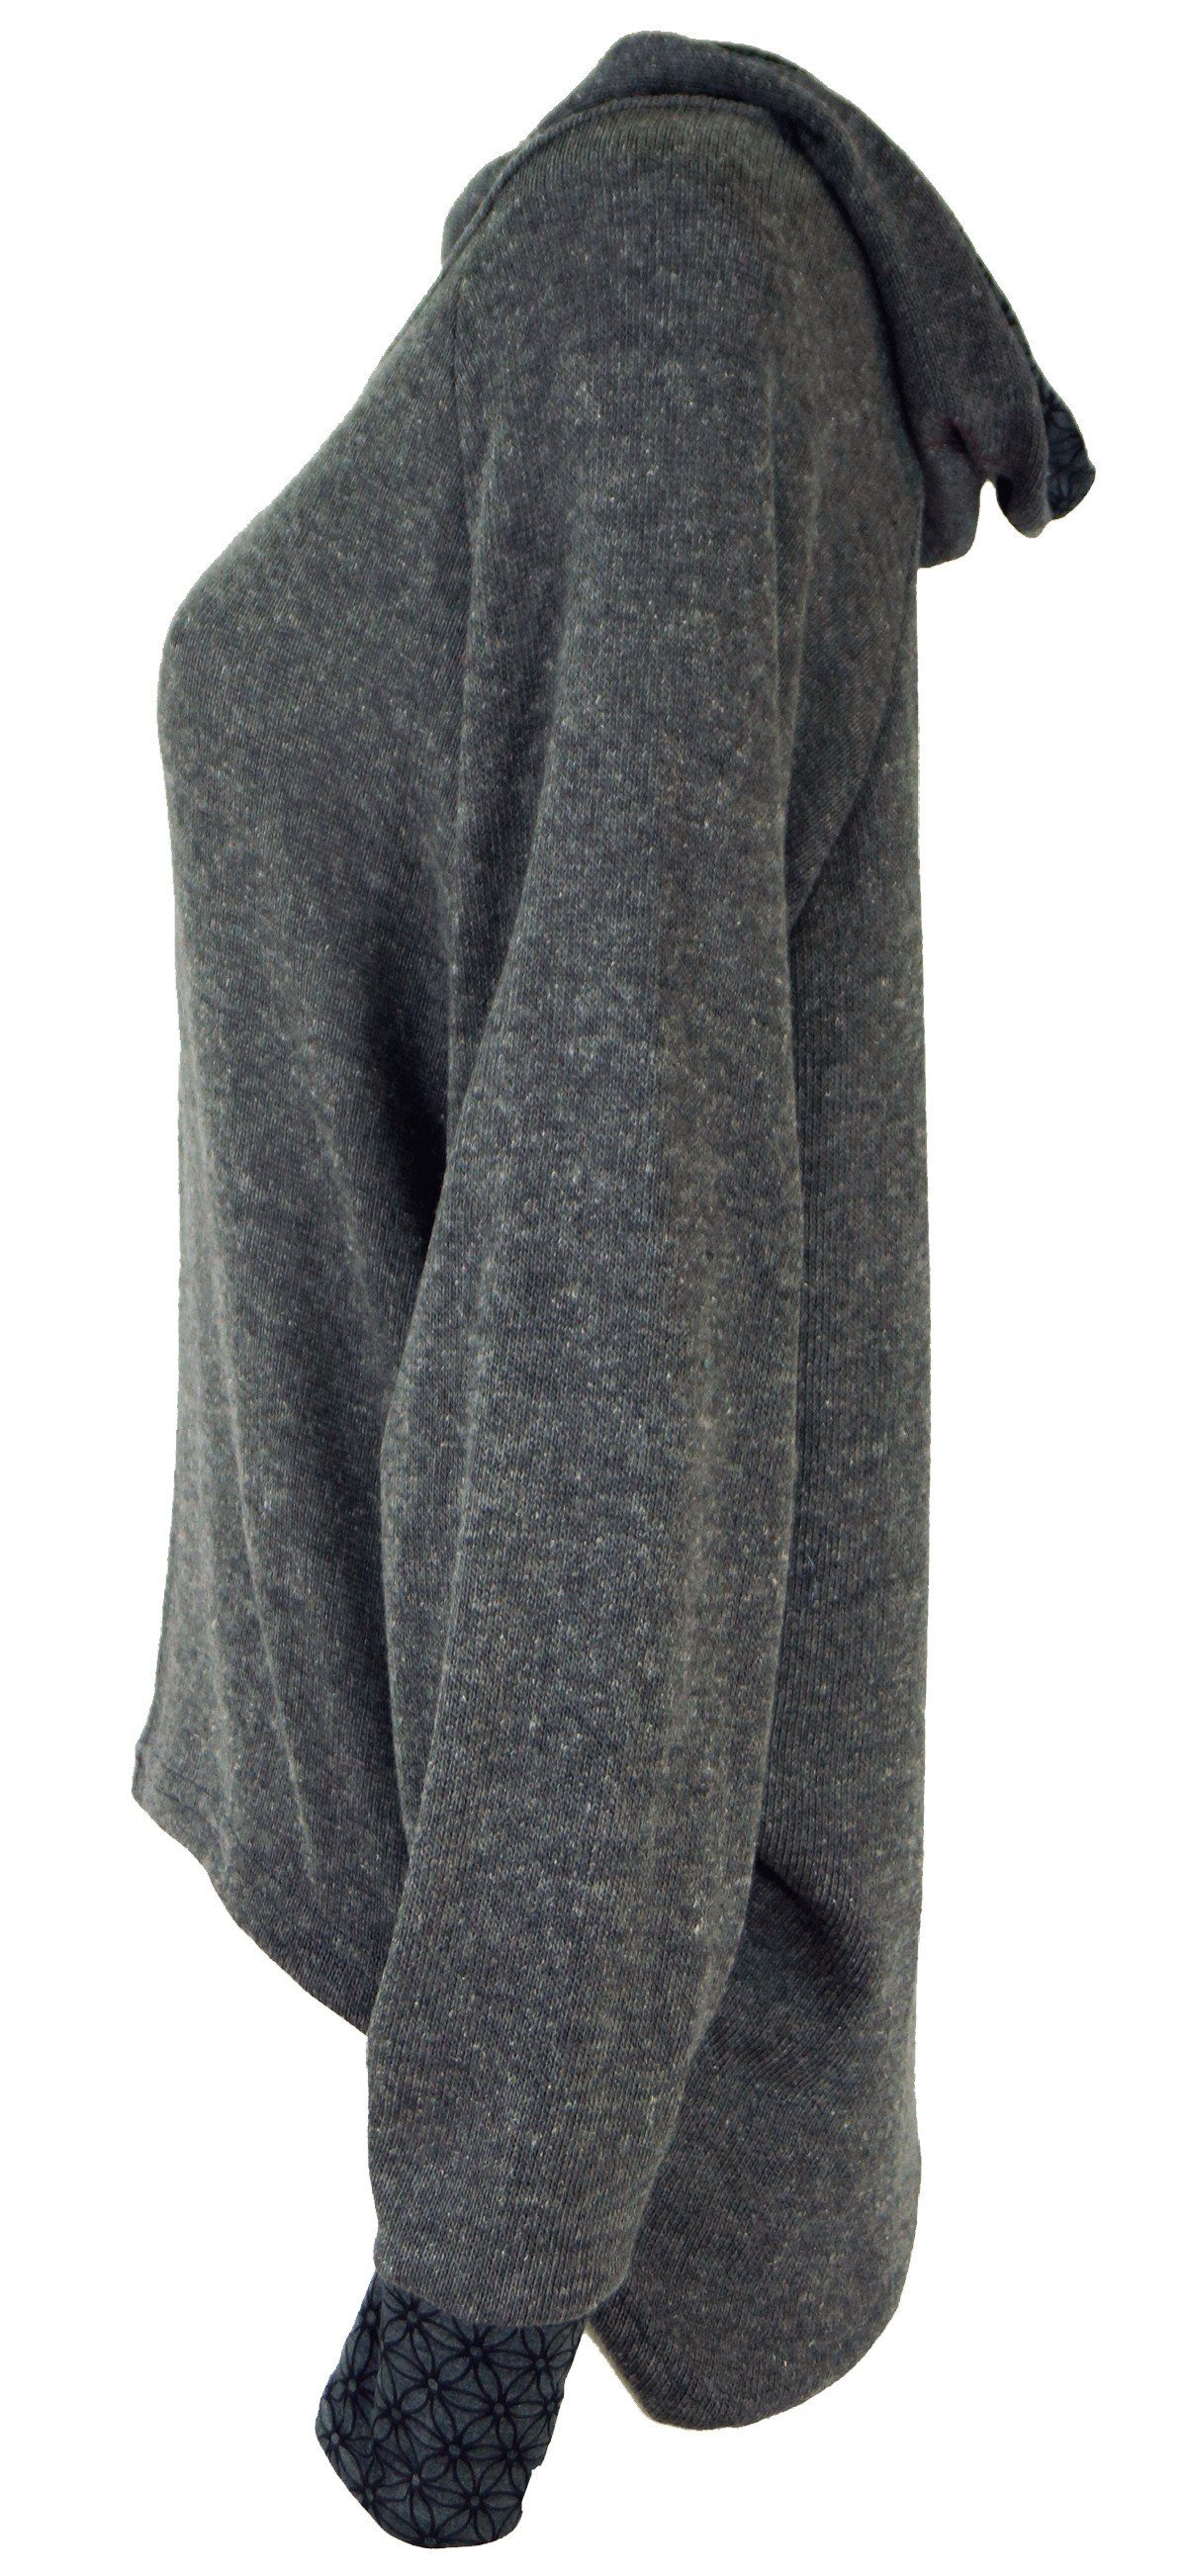 Guru-Shop Longsleeve Hoody, alternative Pullover, Sweatshirt, Kapuzenpullover -.. grau Bekleidung